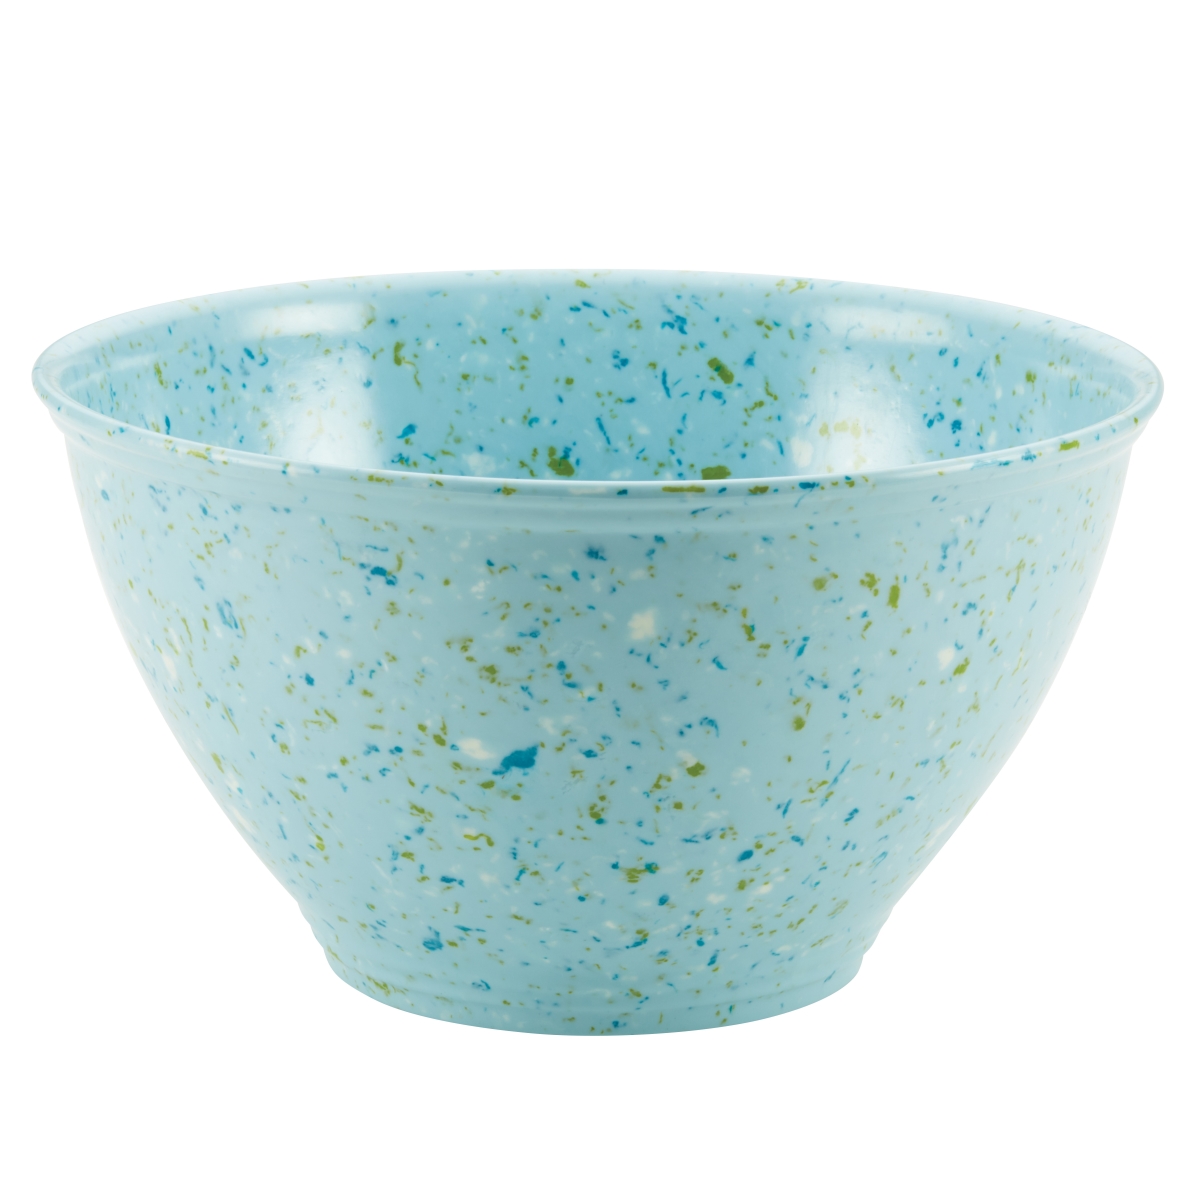 47643 Kitchenware Garbage Bowl, Light Blue